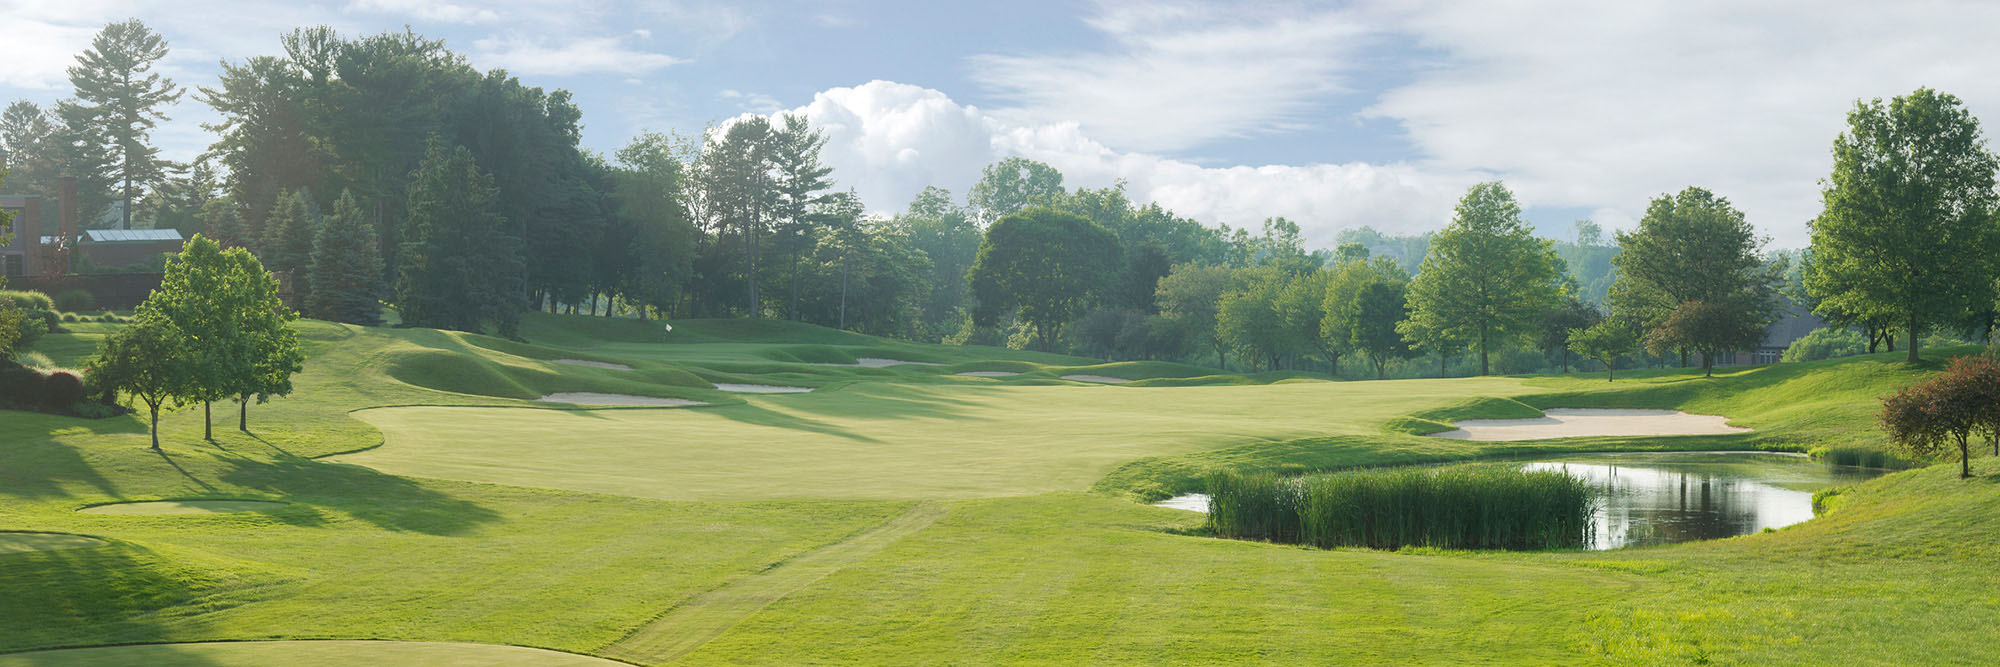 Golf Course Image - Glenmoor Country Club No. 9